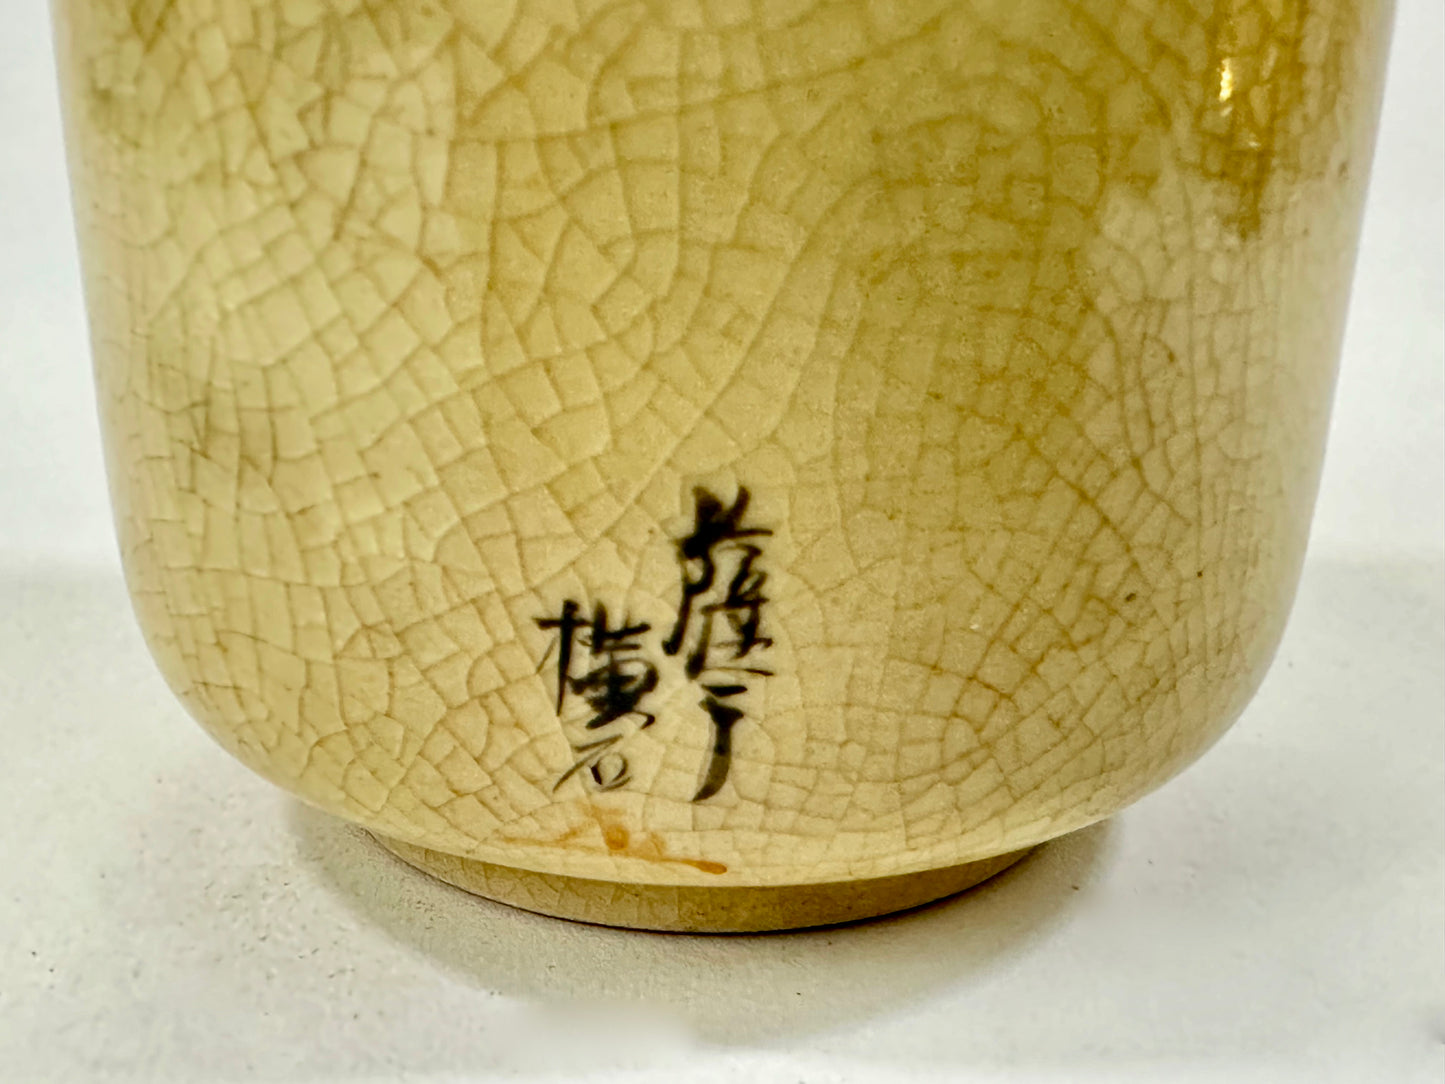 Vintage Japanese Taisho Era c.1920's Ceramic Sakazuki Sake Cup 2.25" Signed